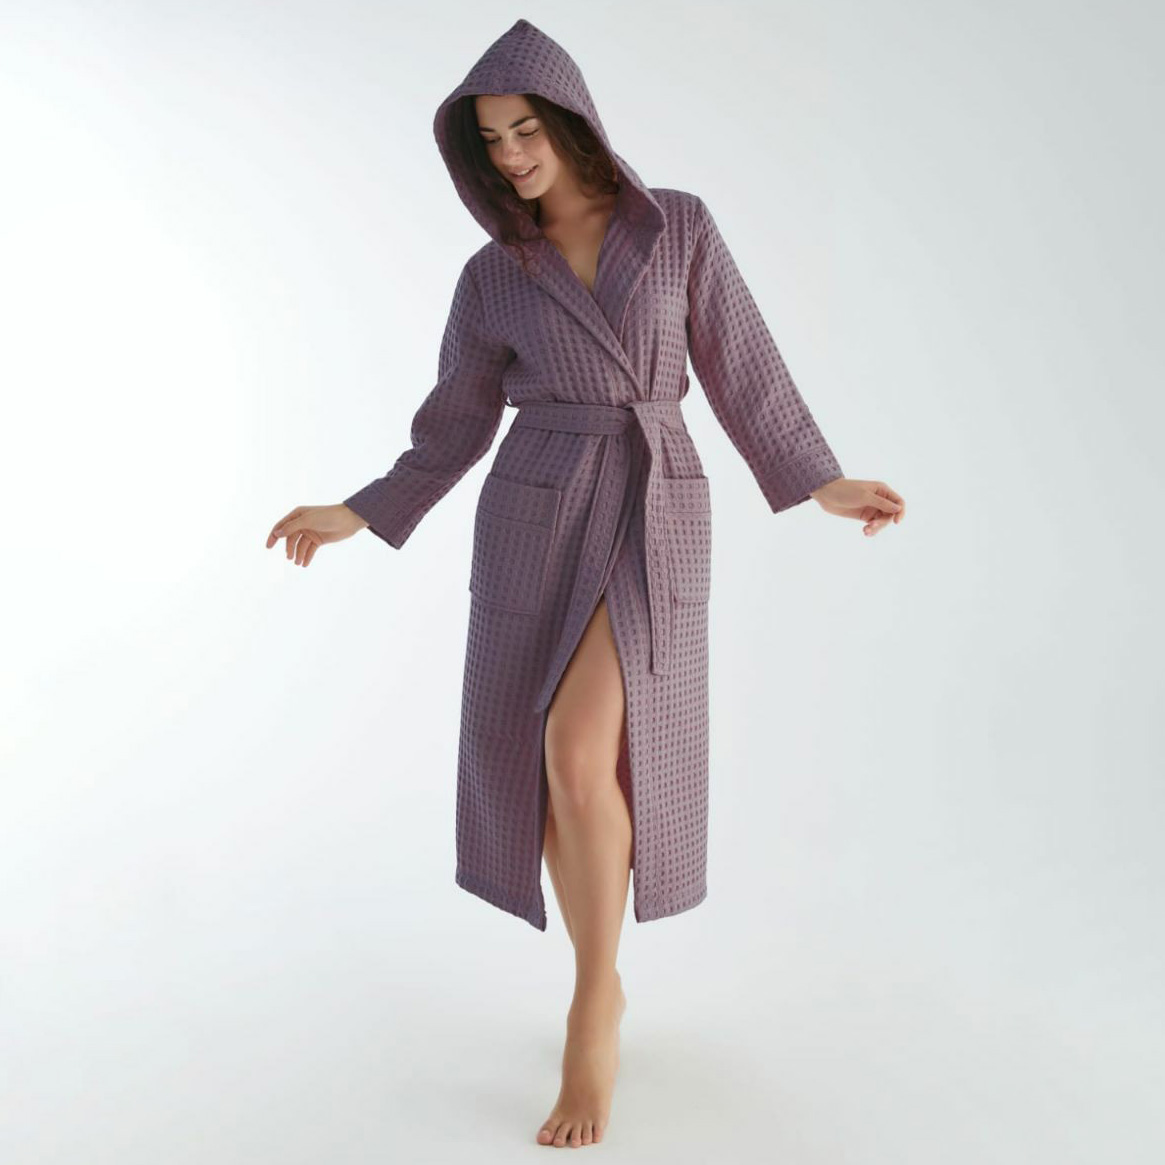 Банный халат Katarina цвет: фиолетовый (2XL), размер 2XL nus948816 Банный халат Katarina цвет: фиолетовый (2XL) - фото 1